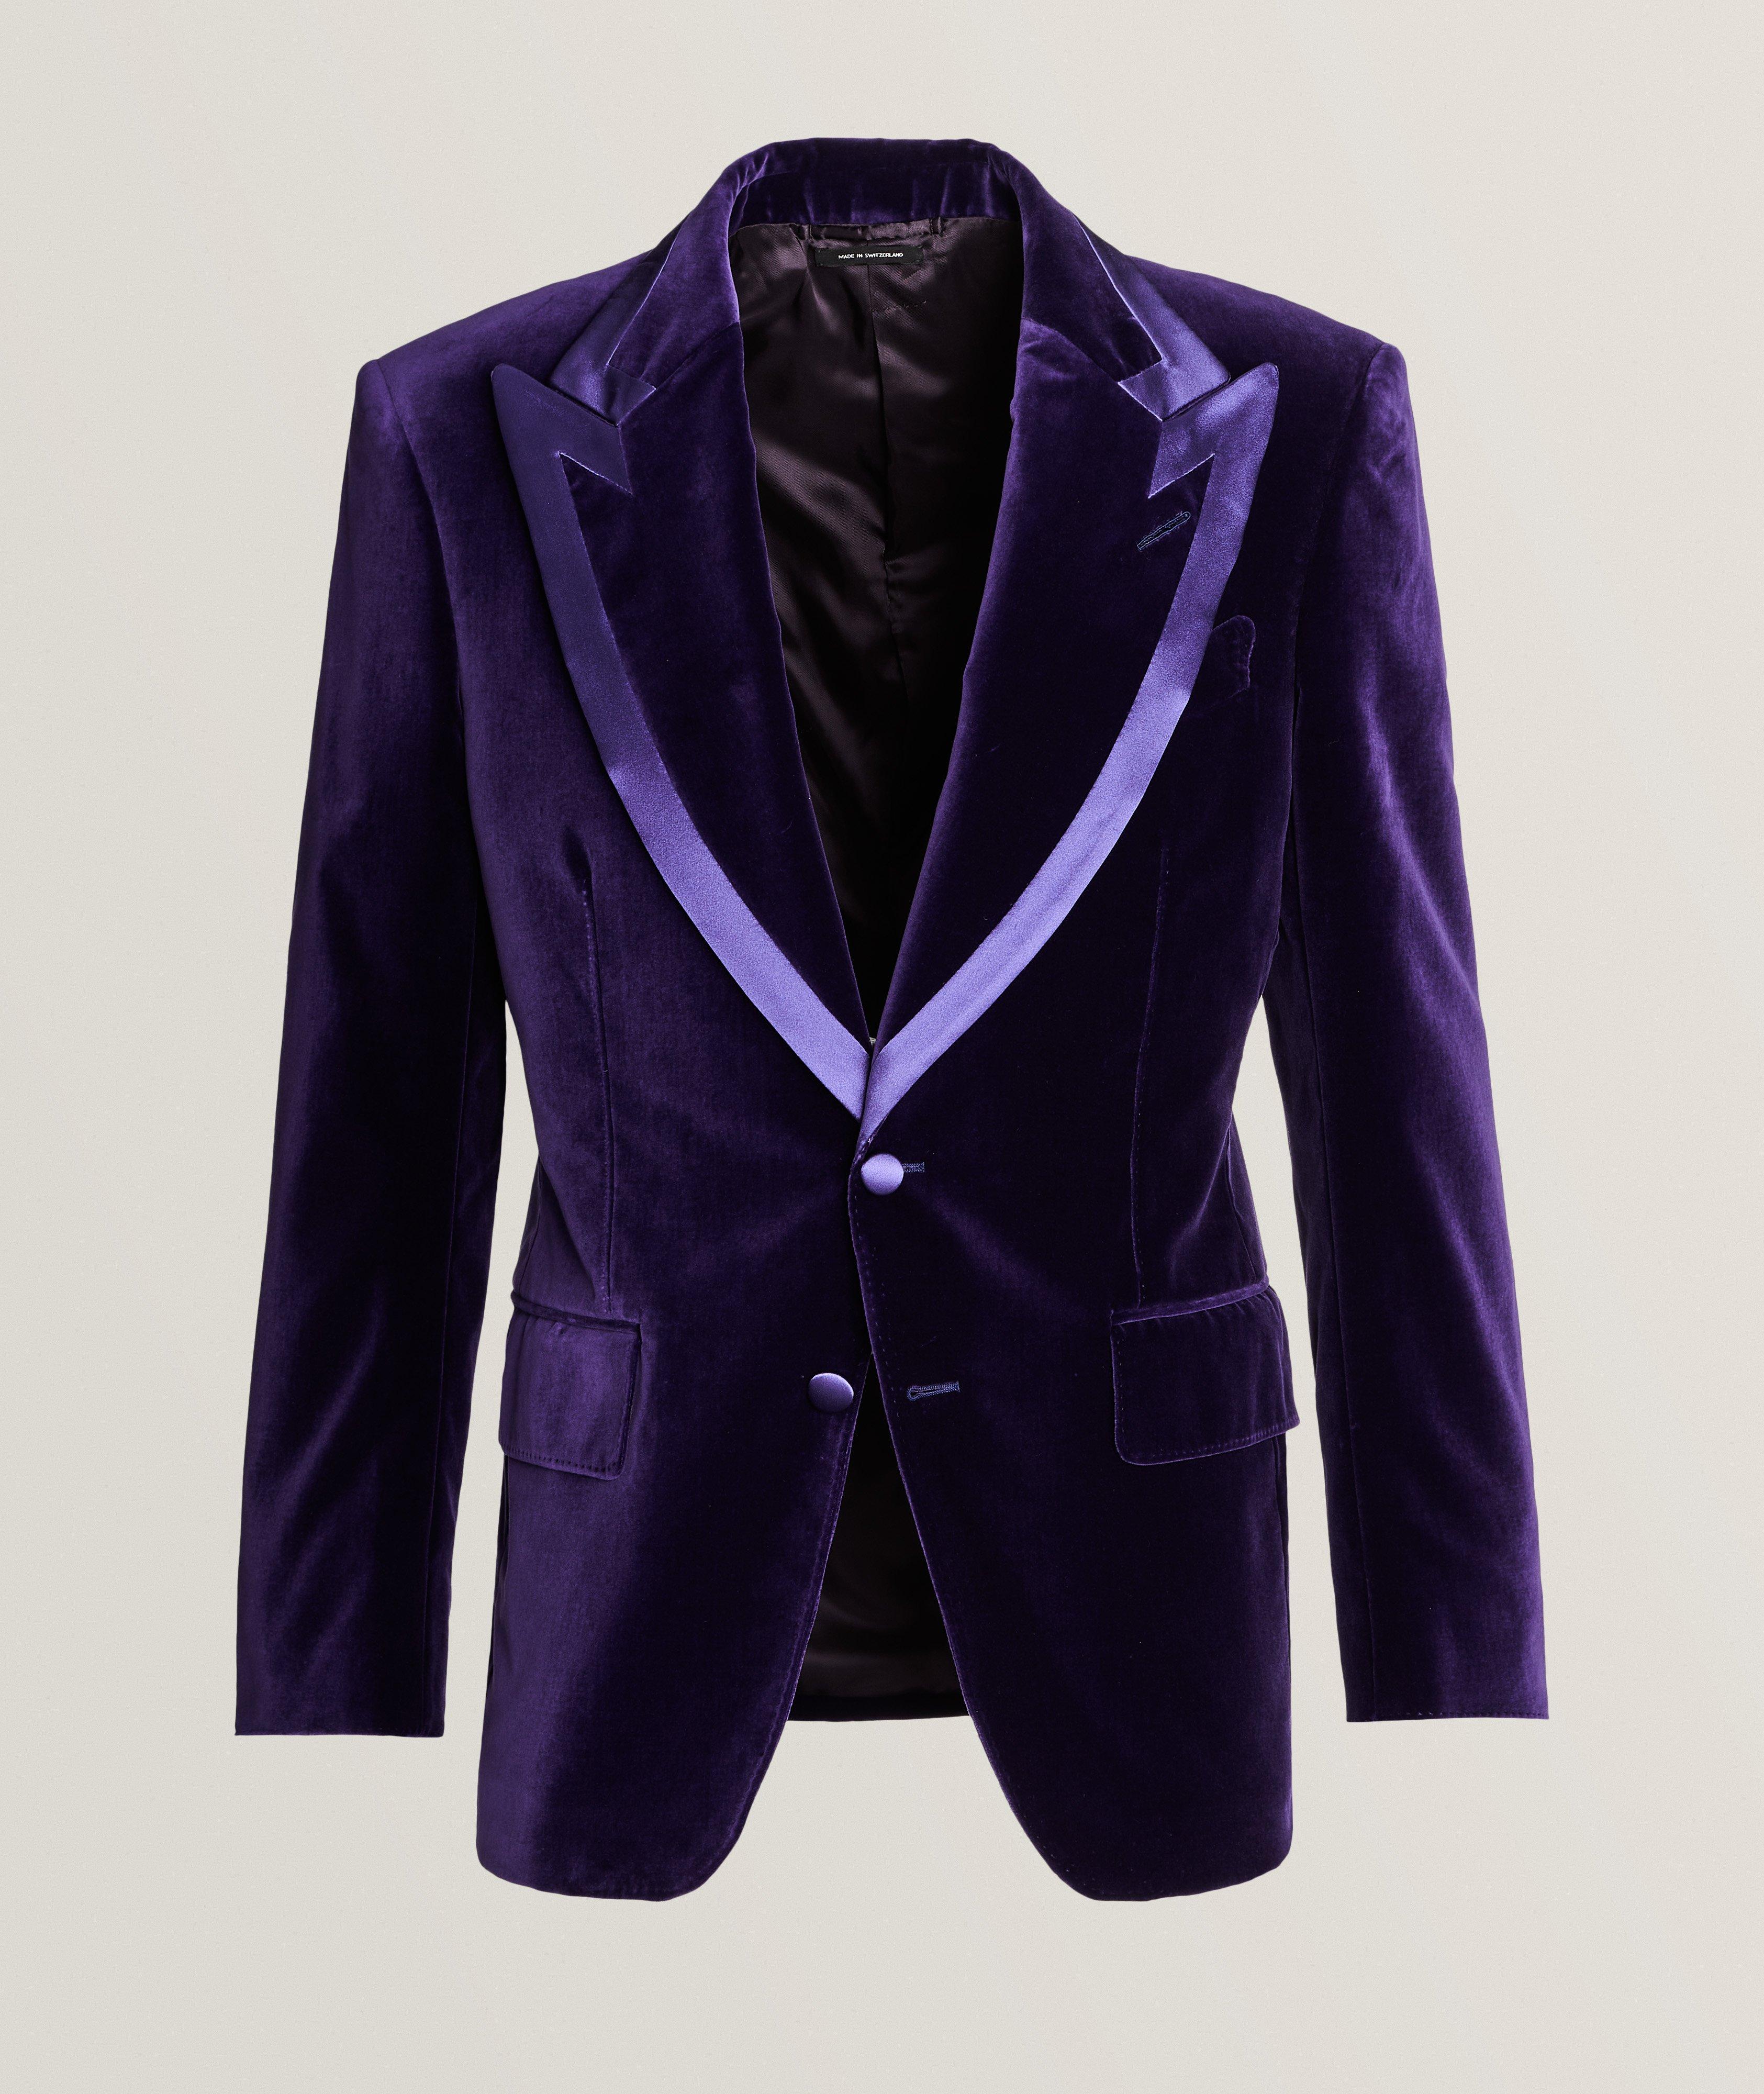 Suit Vest Men Purple Waistcoat Silk Vest for Men Jacquard Novelty Tie Set  Formal Business Party Male Jacket (Color : Purple, Size : M) : :  Clothing, Shoes & Accessories